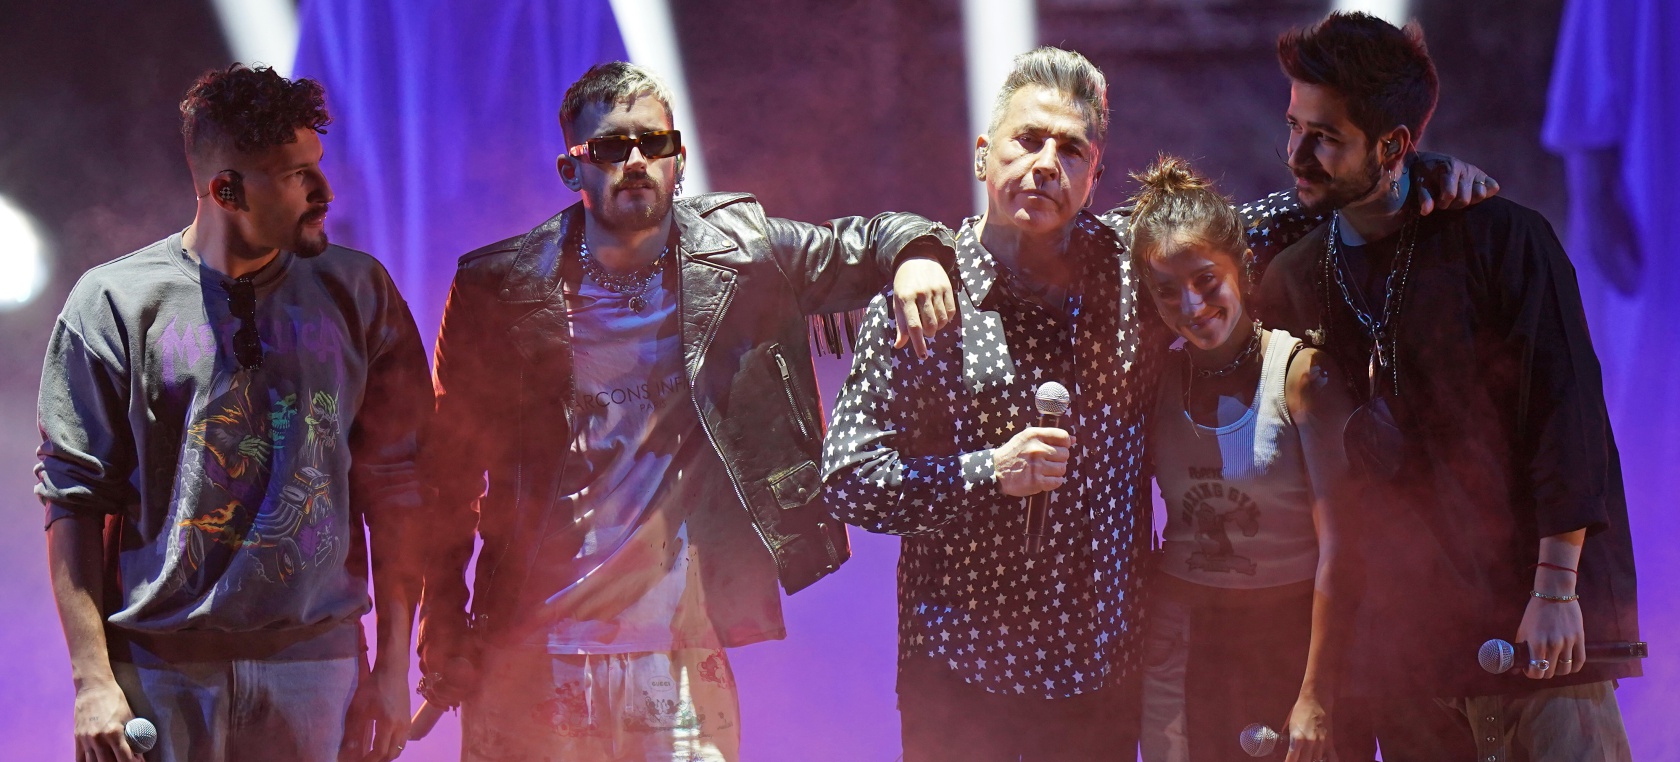 Camilo, Evaluna, Ricardo Montaner y Mau & Ricky se unen en ‘Los Montaner’, su primer concierto juntos